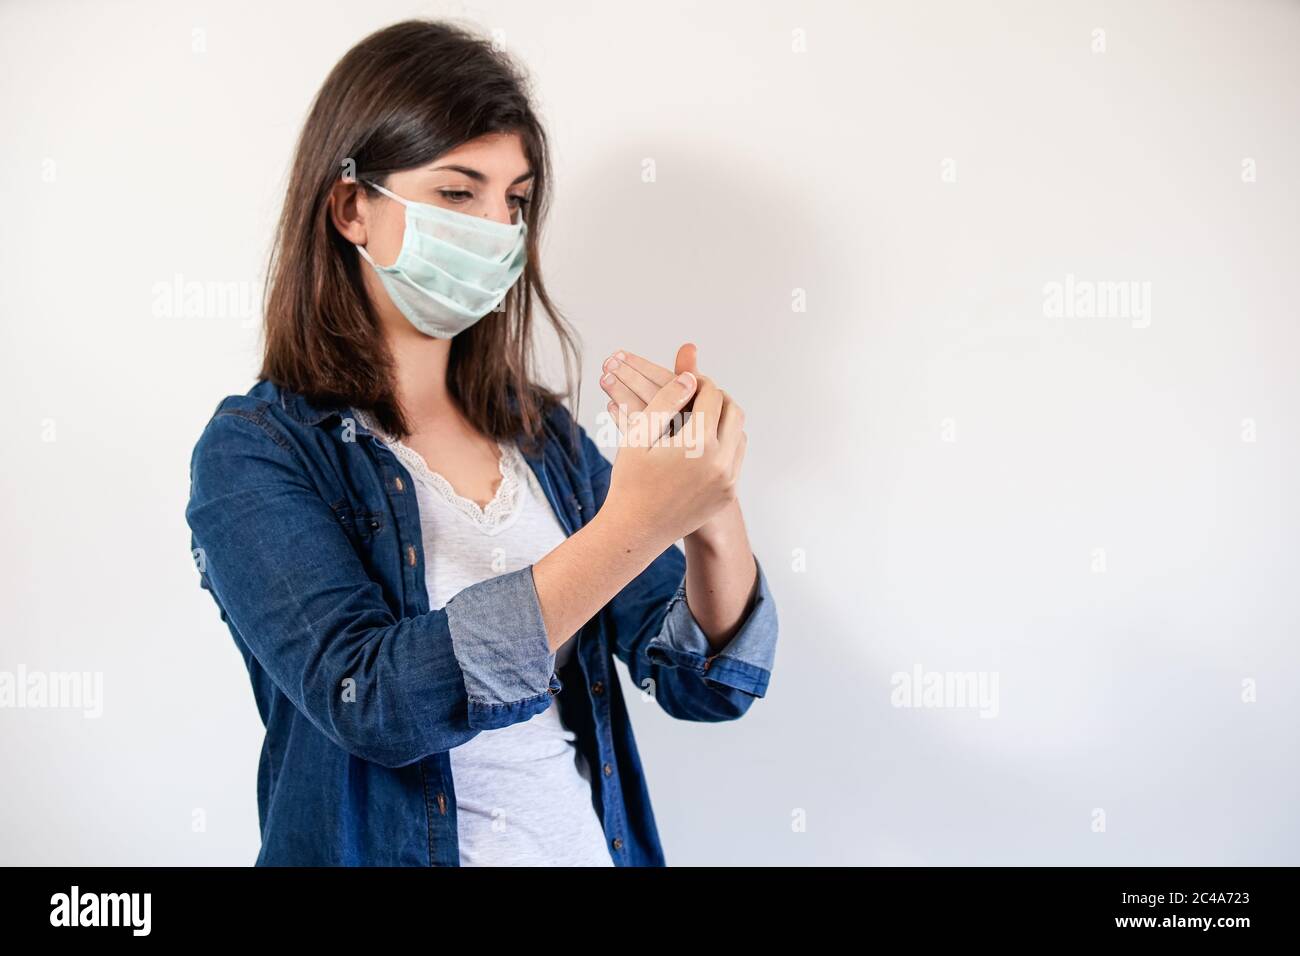 Femme avec masque de protection médicale mettant sur antiseptique pour désinfecter ses mains Banque D'Images